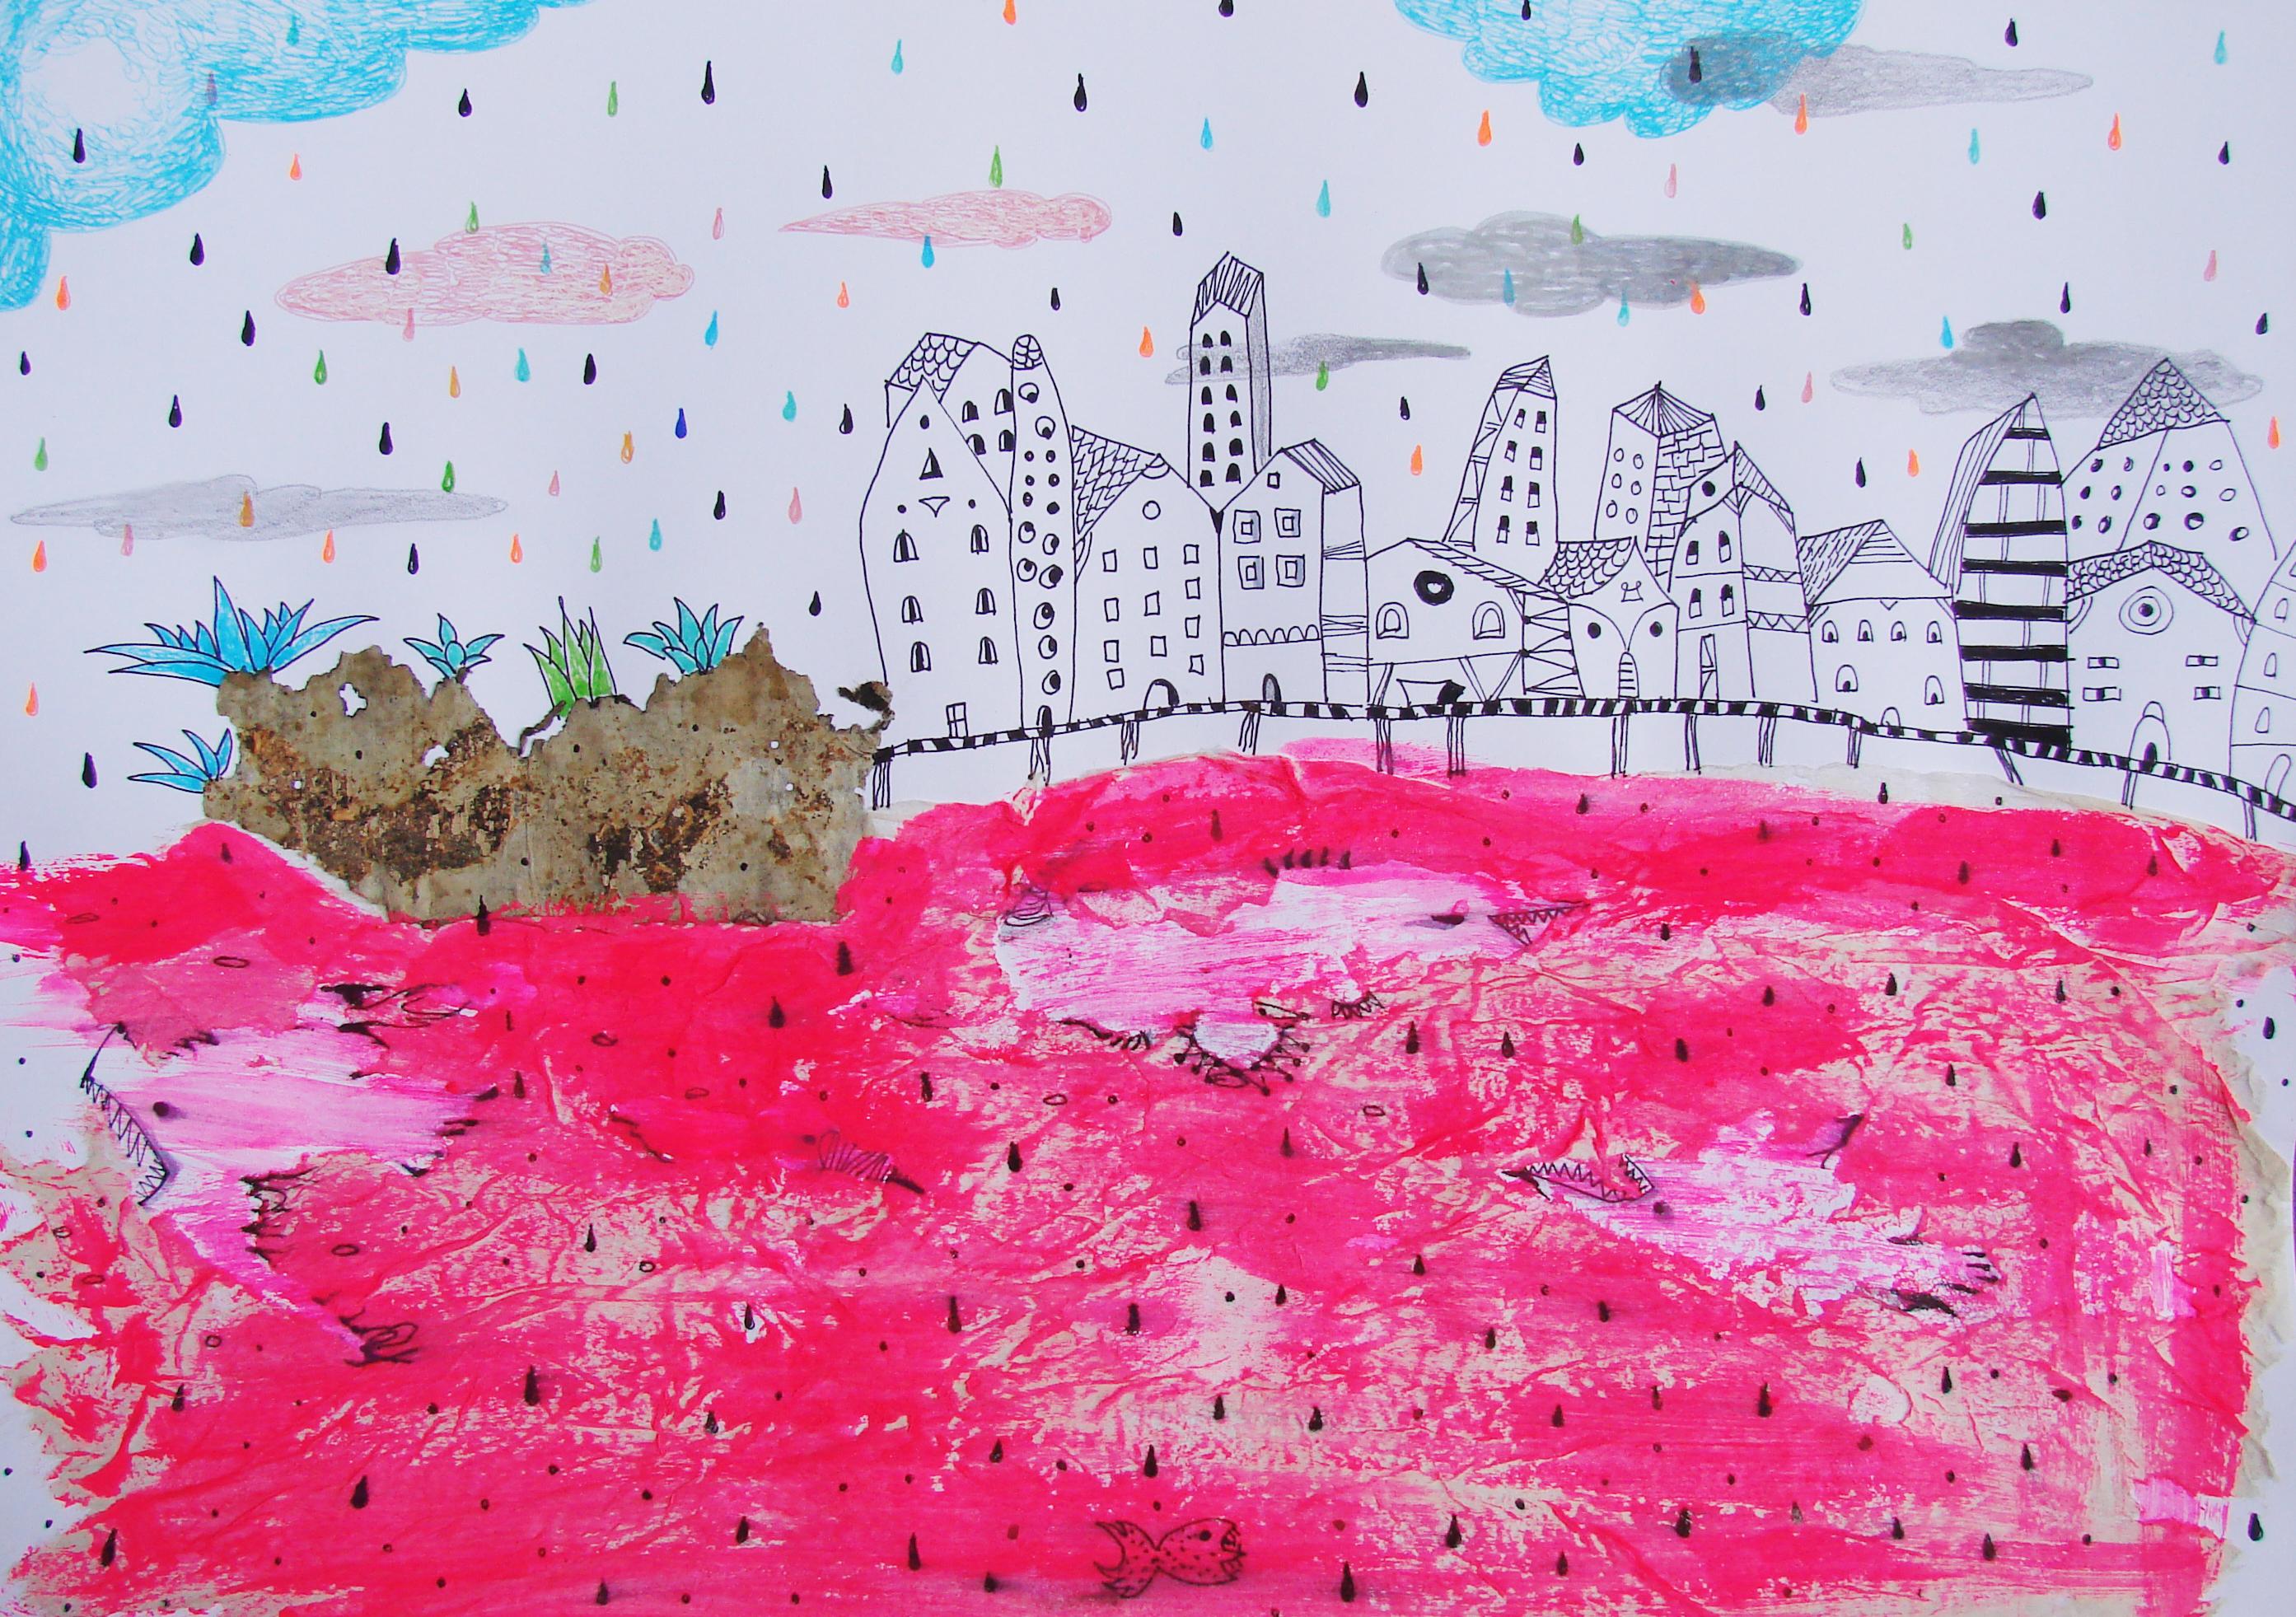 Raluca Arnăutu Animal Art – Rotes Meer - Zeitgenössisch, Zeichnung auf Papier, Rosa, traumhaft, figürlich